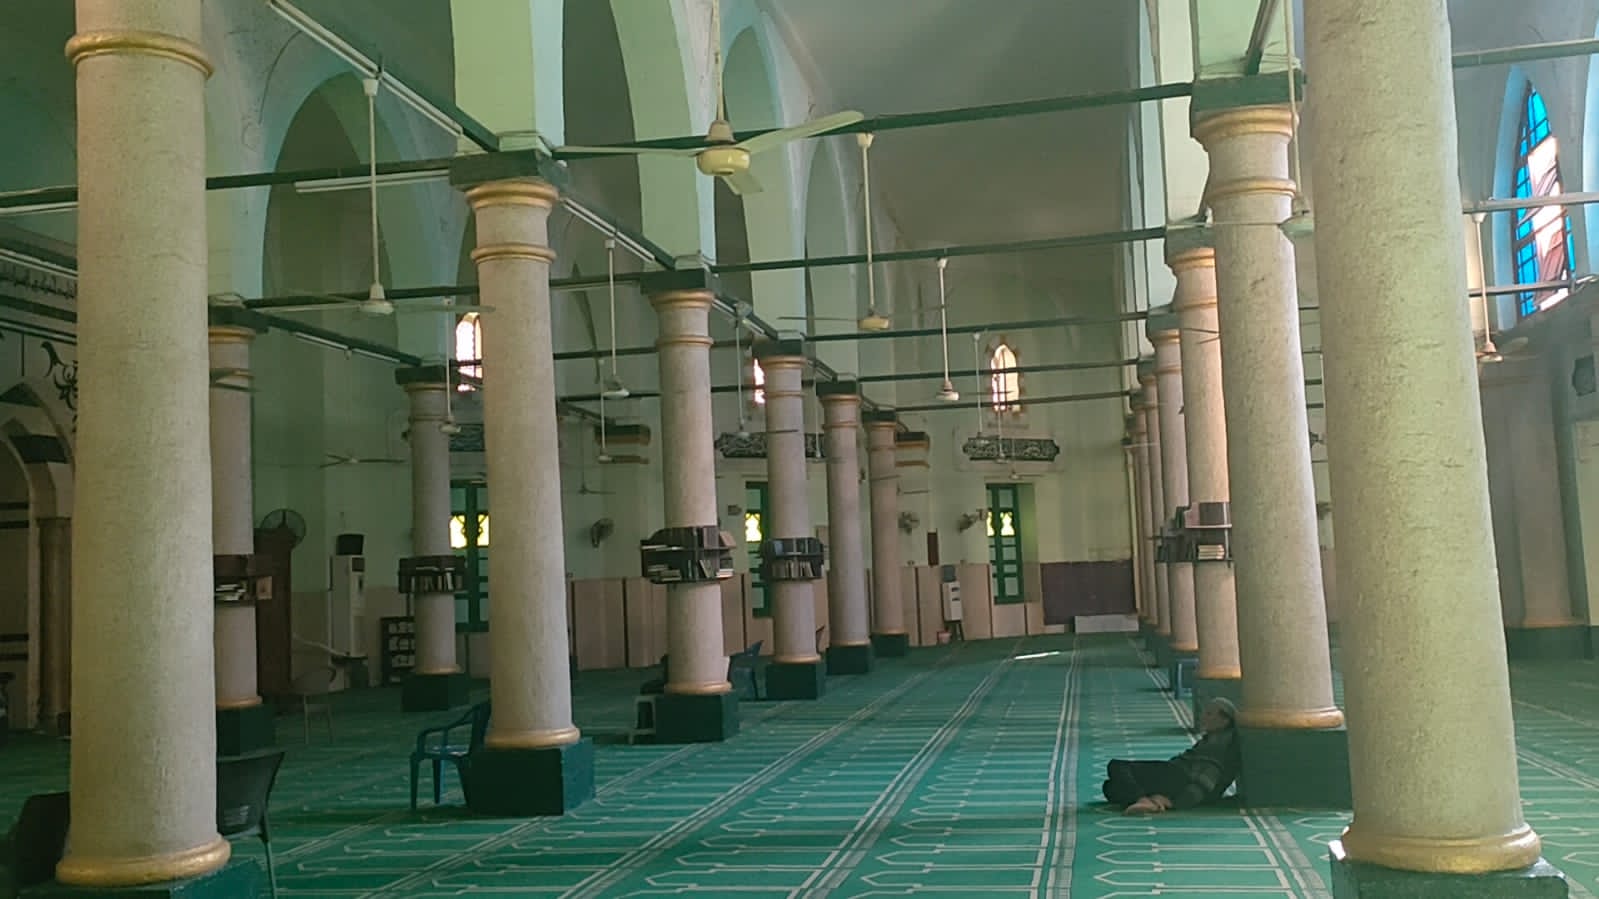 أعمدة  المسجد الأموي التاريخي بأسيوط